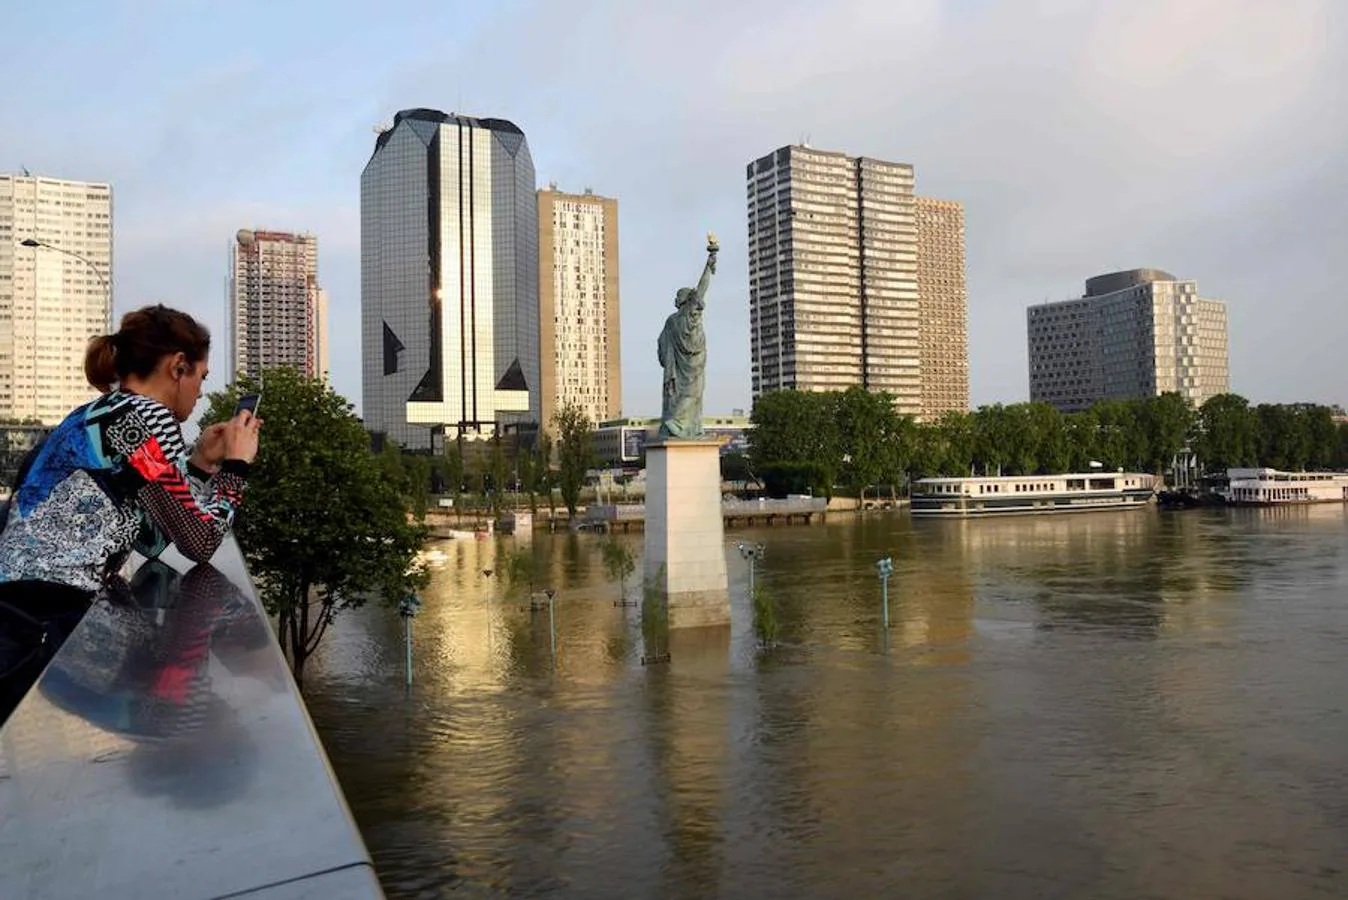 Una muchacha mira el móvil en un puente ubicado en frente de una réplica de la Estatua de la Libertad en el río Sena 